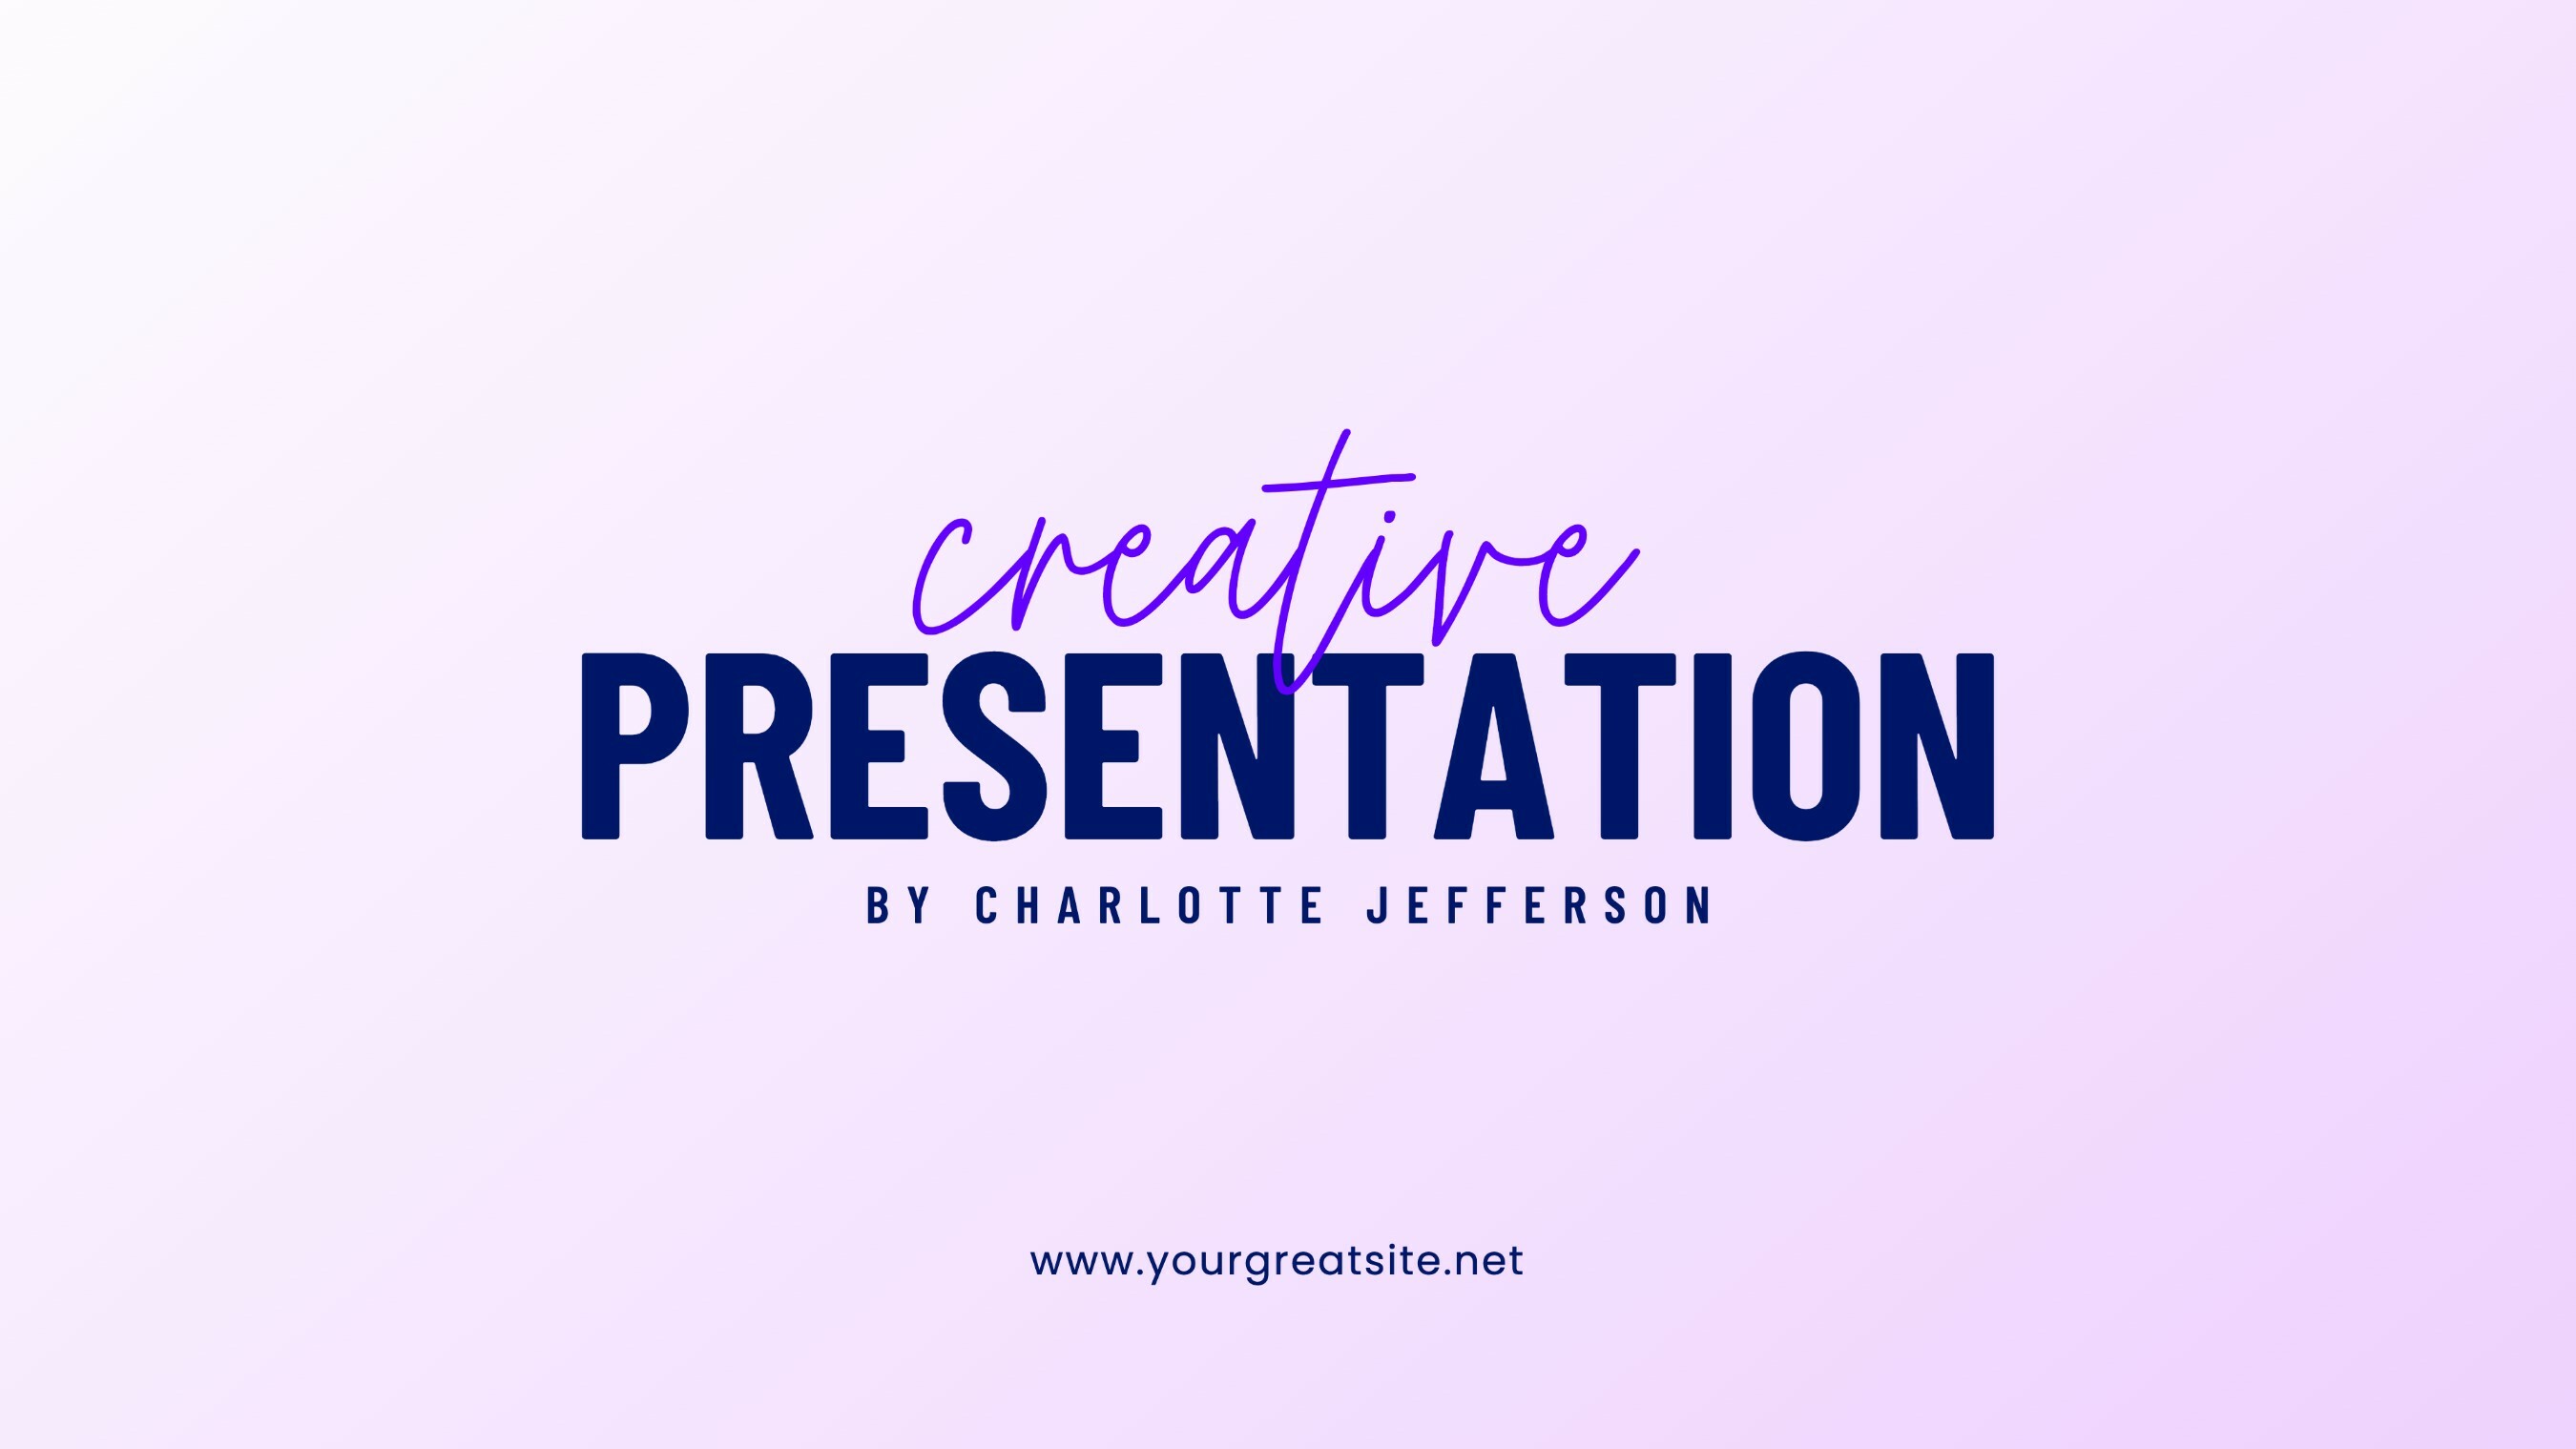 Purple Simple Creative Corporate Presentation Template